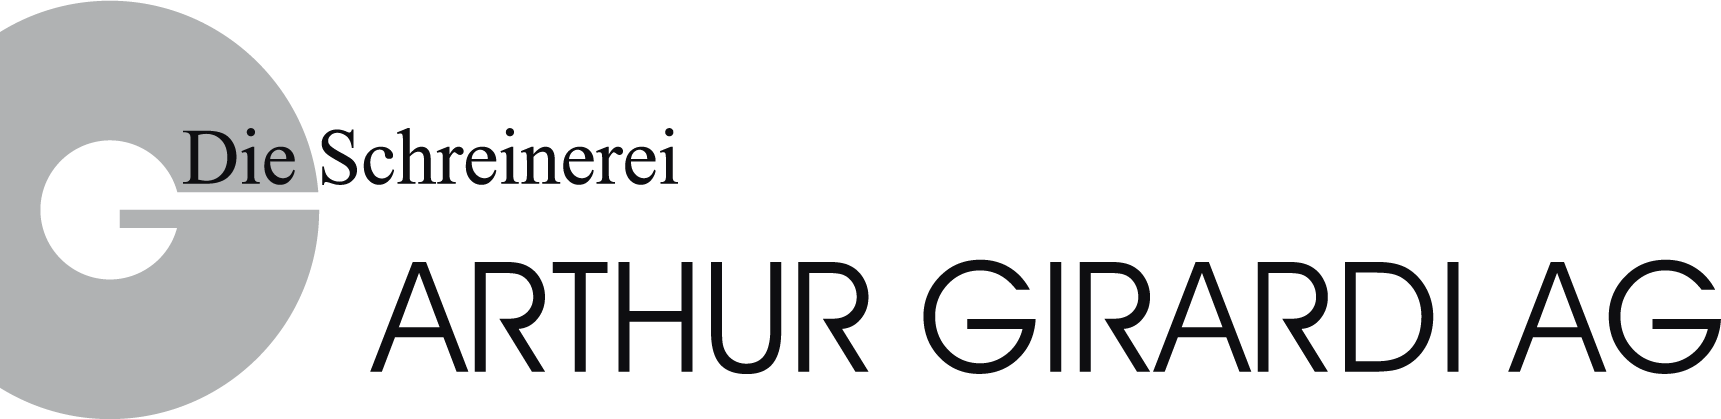 Logo: Arthur Girardi AG - Die Schreinerei